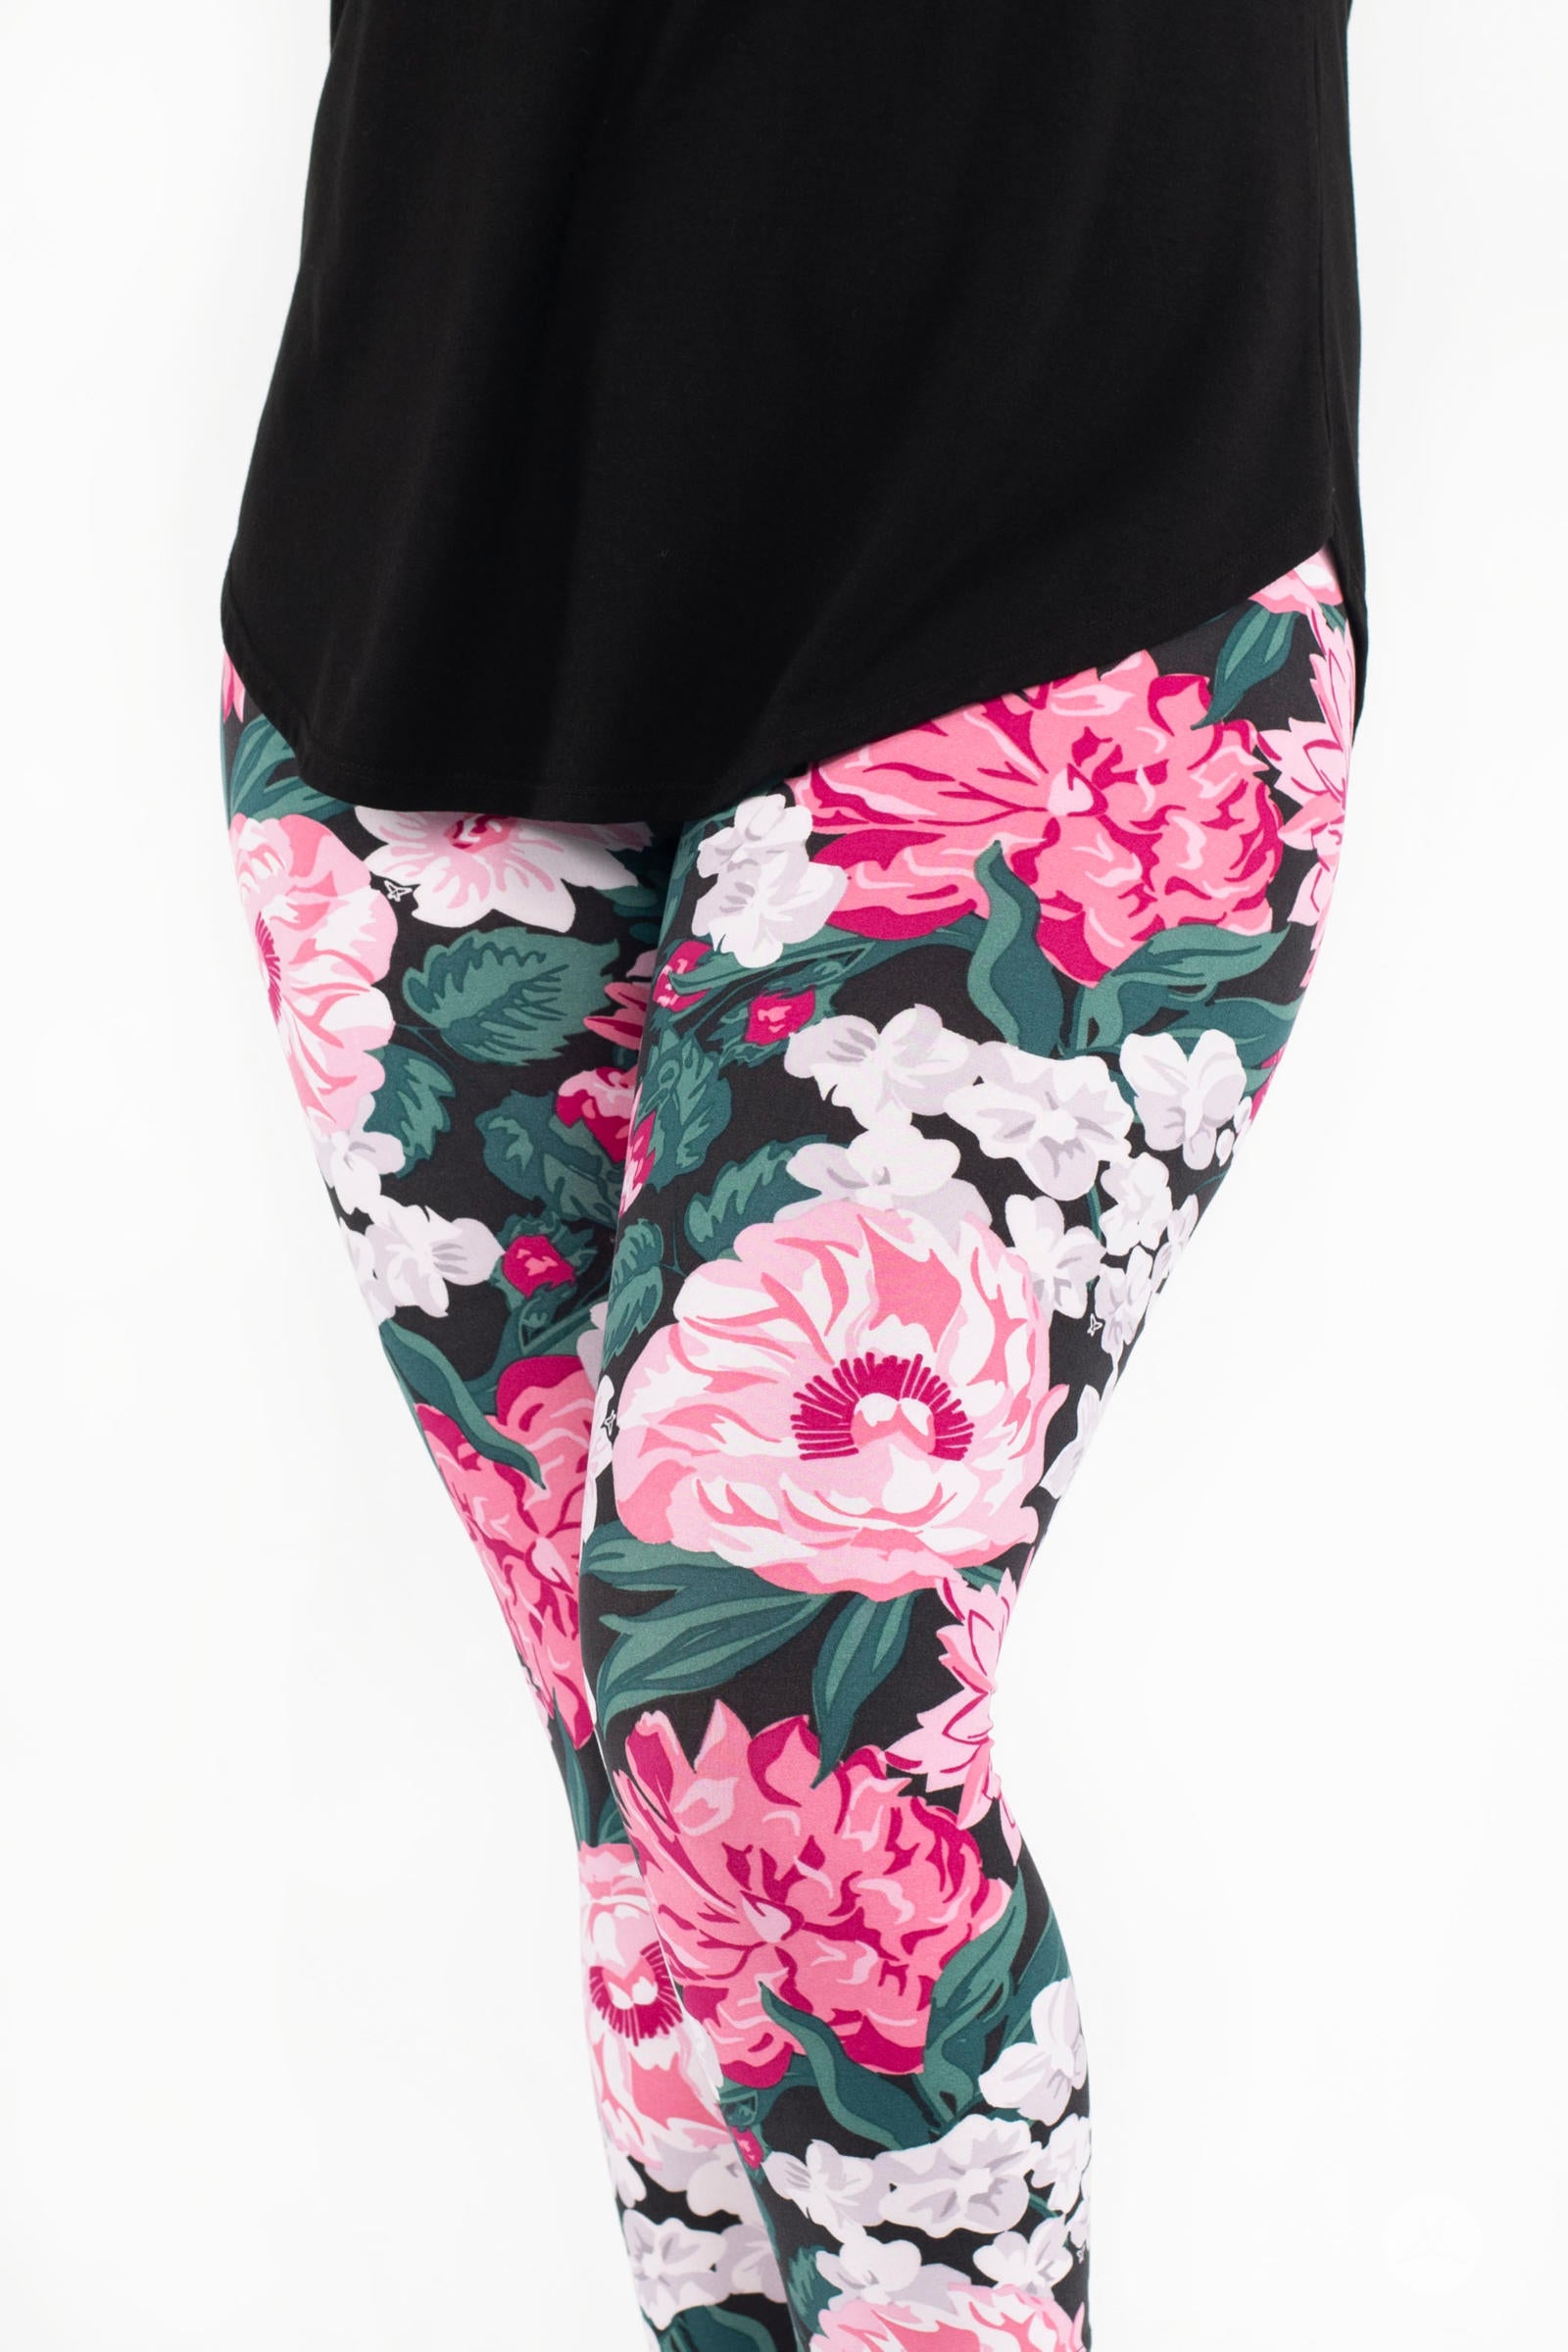 Spring Flower print. Leggings for woman, Cute crop top